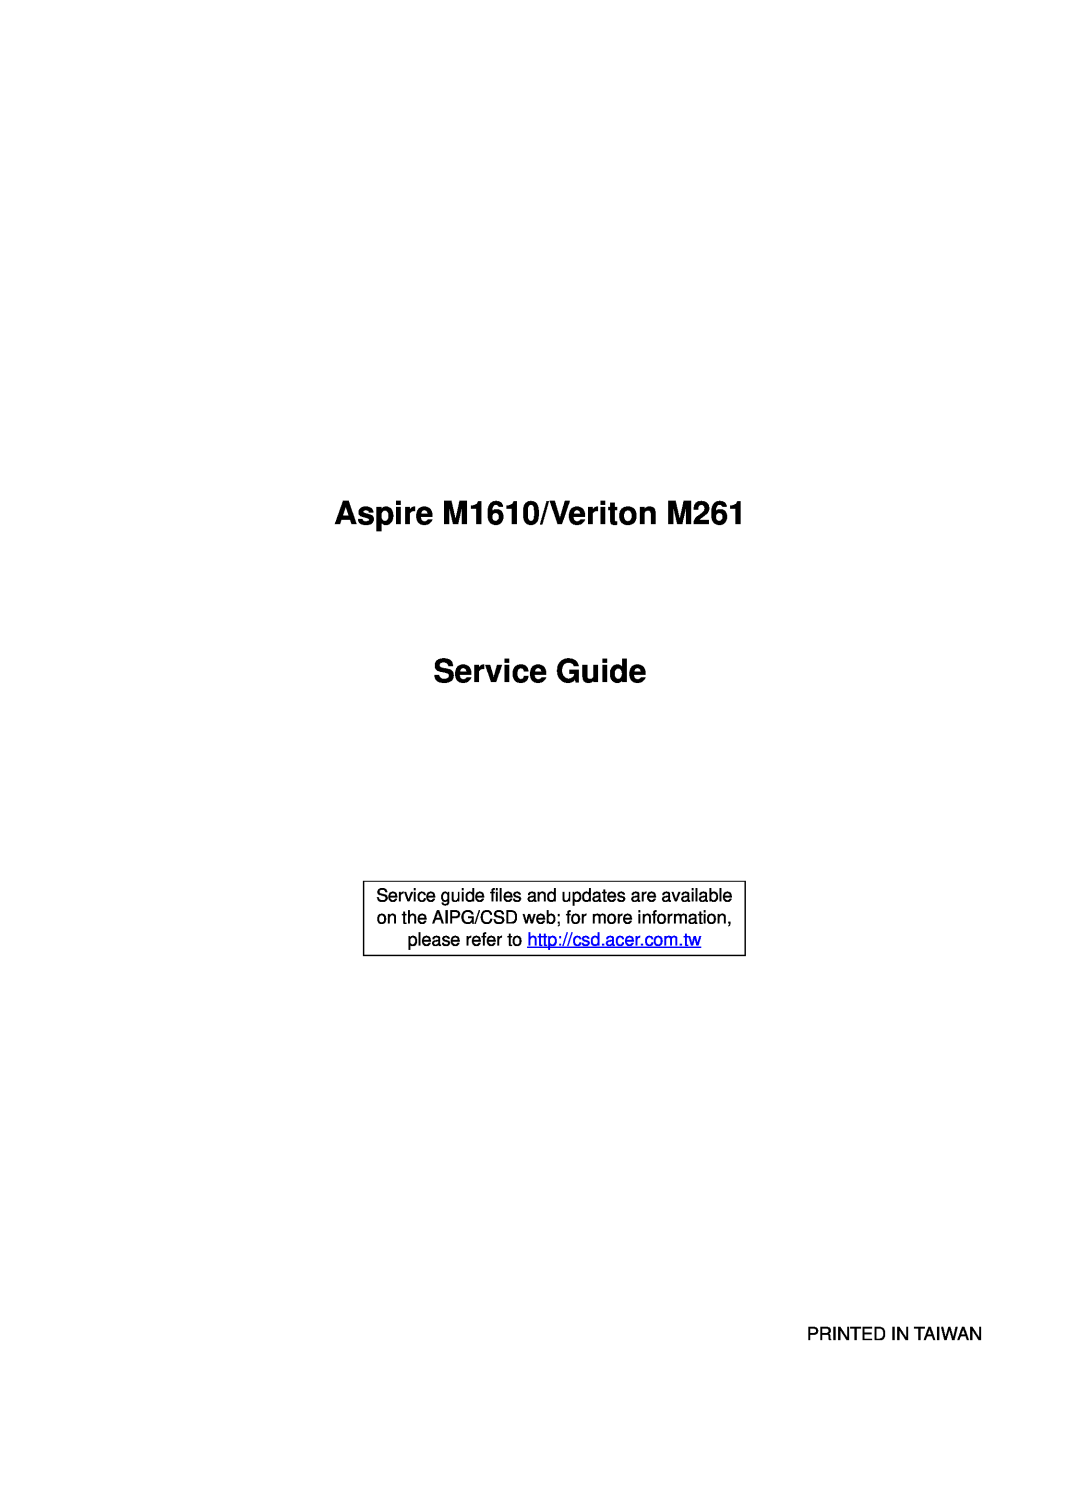 Aspire Digital manual Aspire M1610/Veriton M261, Service Guide, Printed In Taiwan 